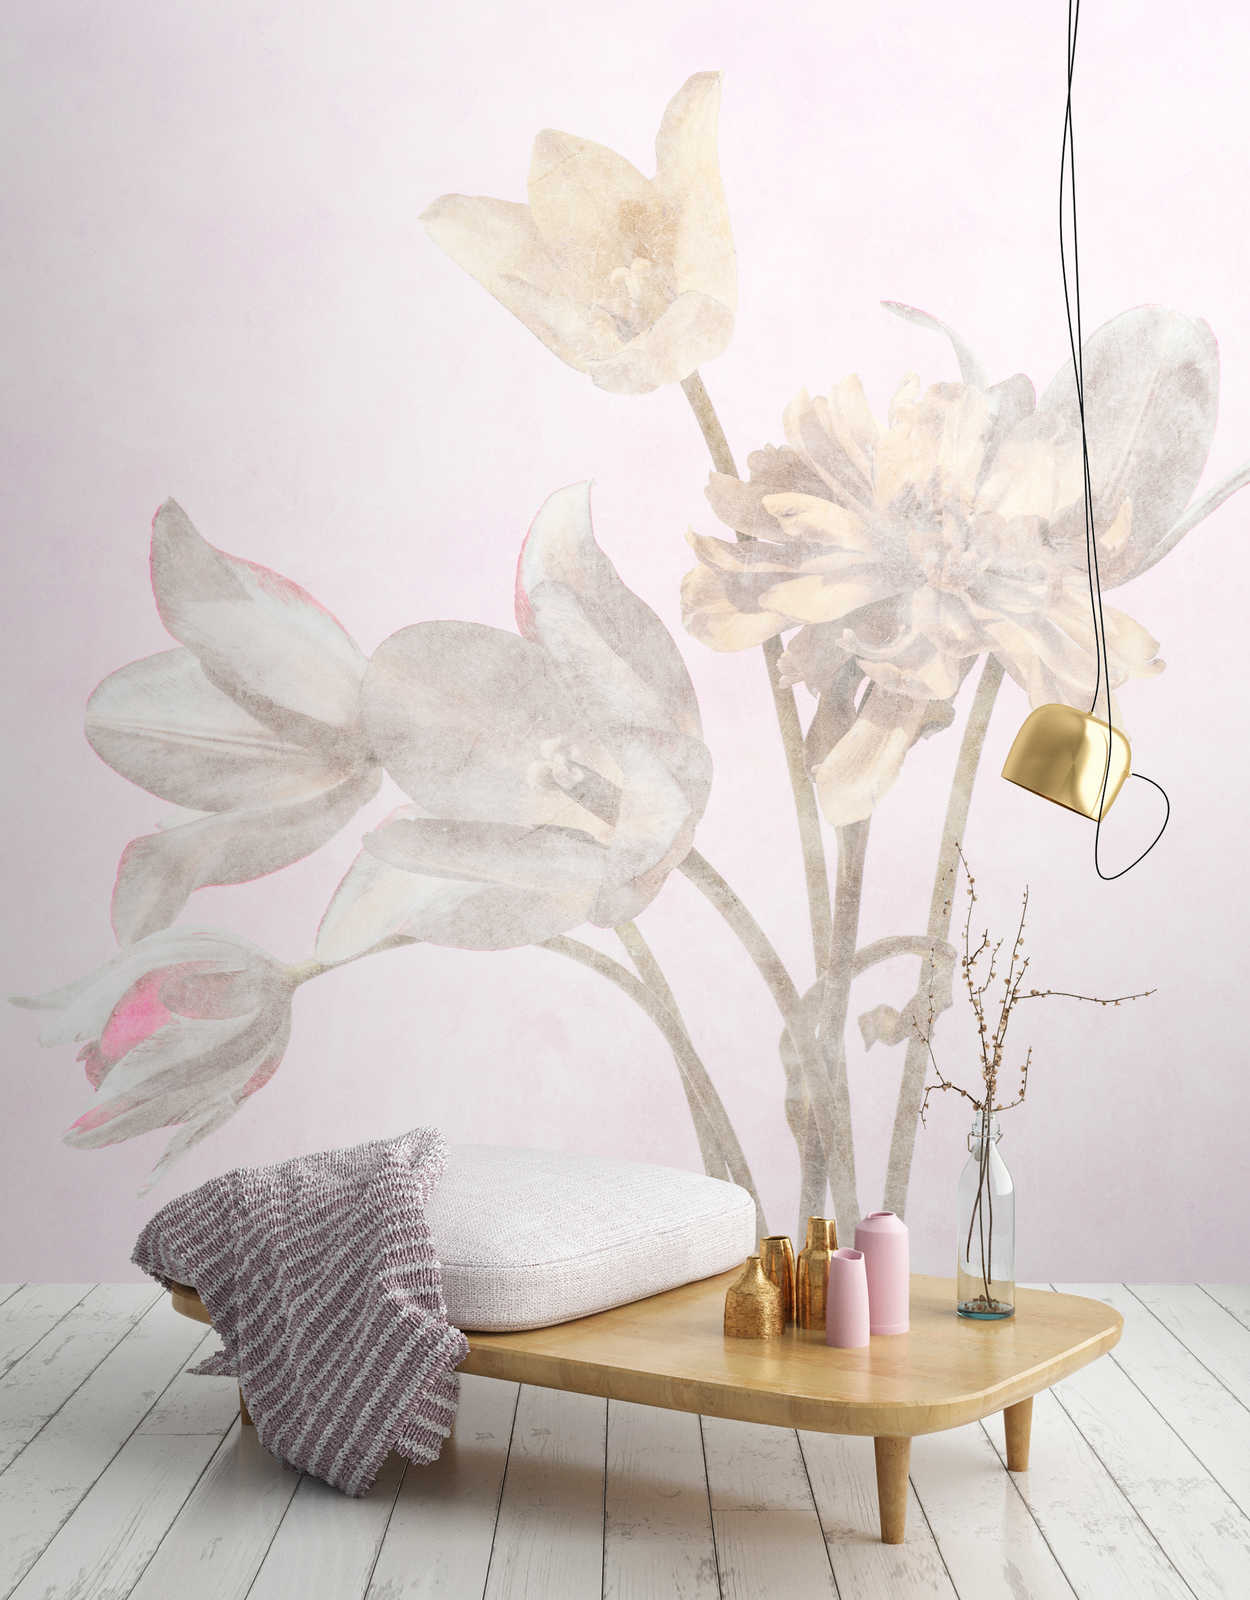             Habitación matutina 1 - Papel pintado de fotos de flores florecidas en estilo descolorido
        